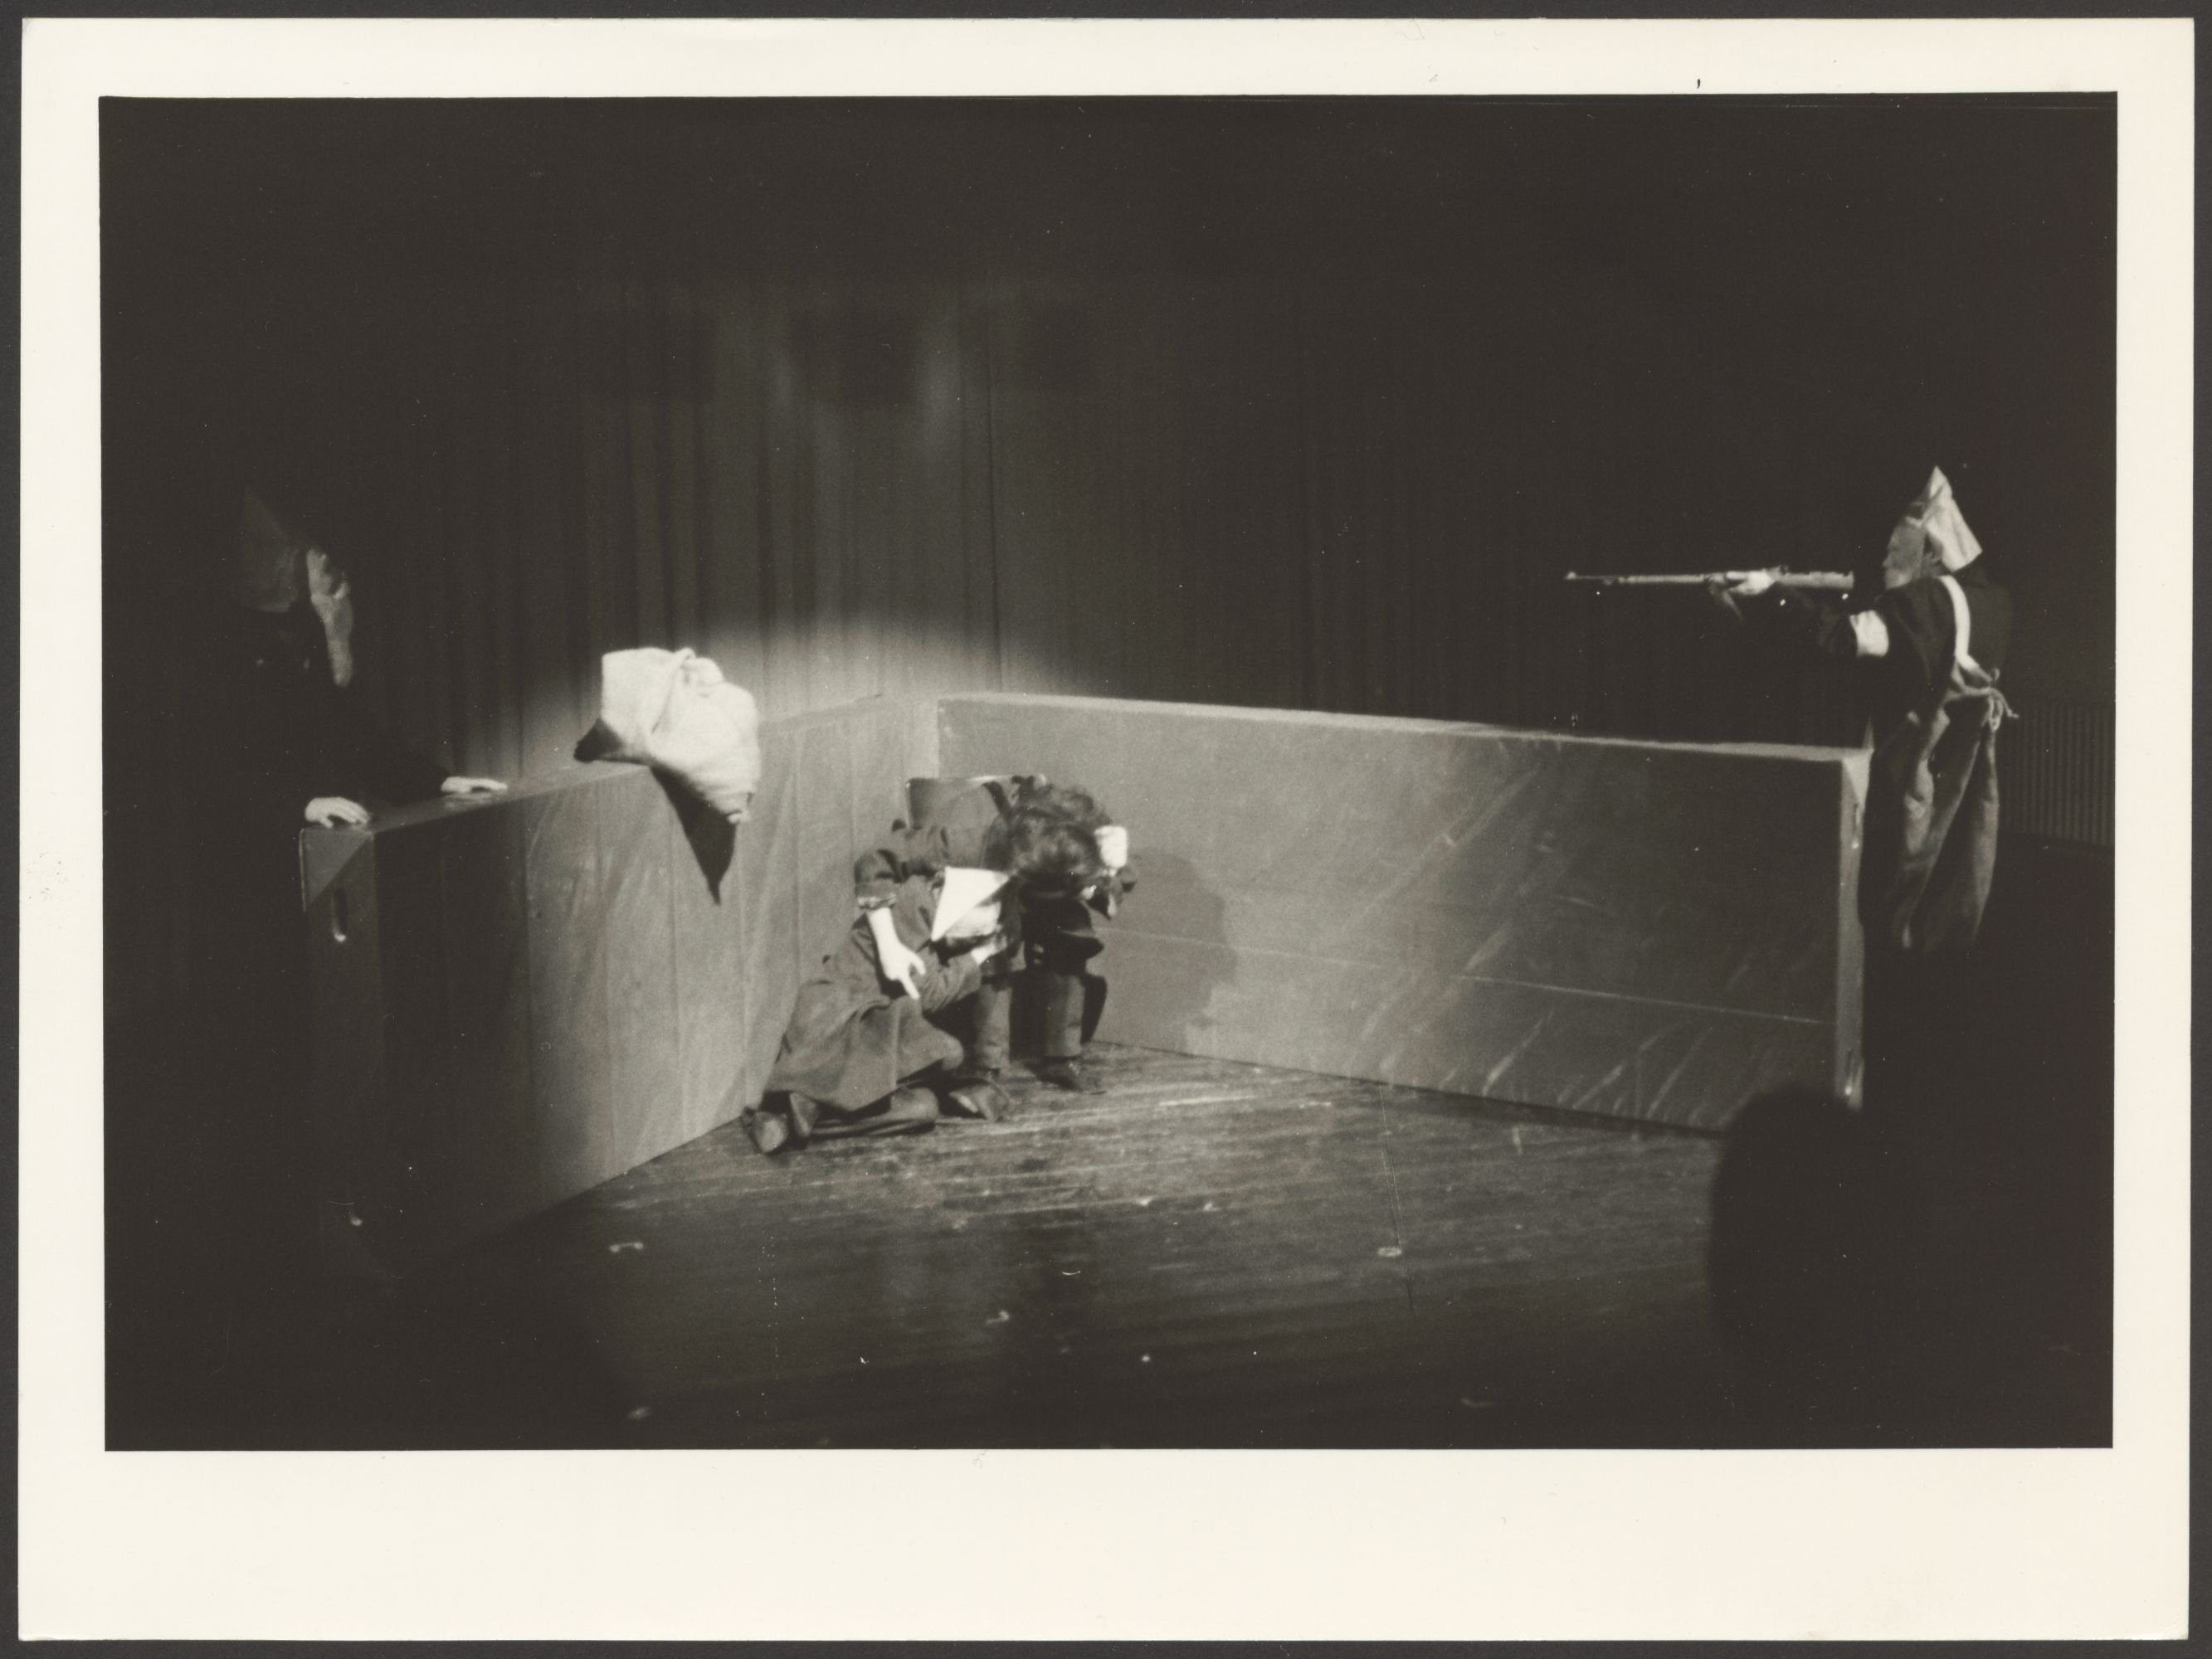 Szenenbild aus einer Inszenierung von „Berliner November“ an der Hochschule für Schauspielkunst Ernst Busch (Hochschule für Schauspielkunst Ernst Busch Berlin RR-F)